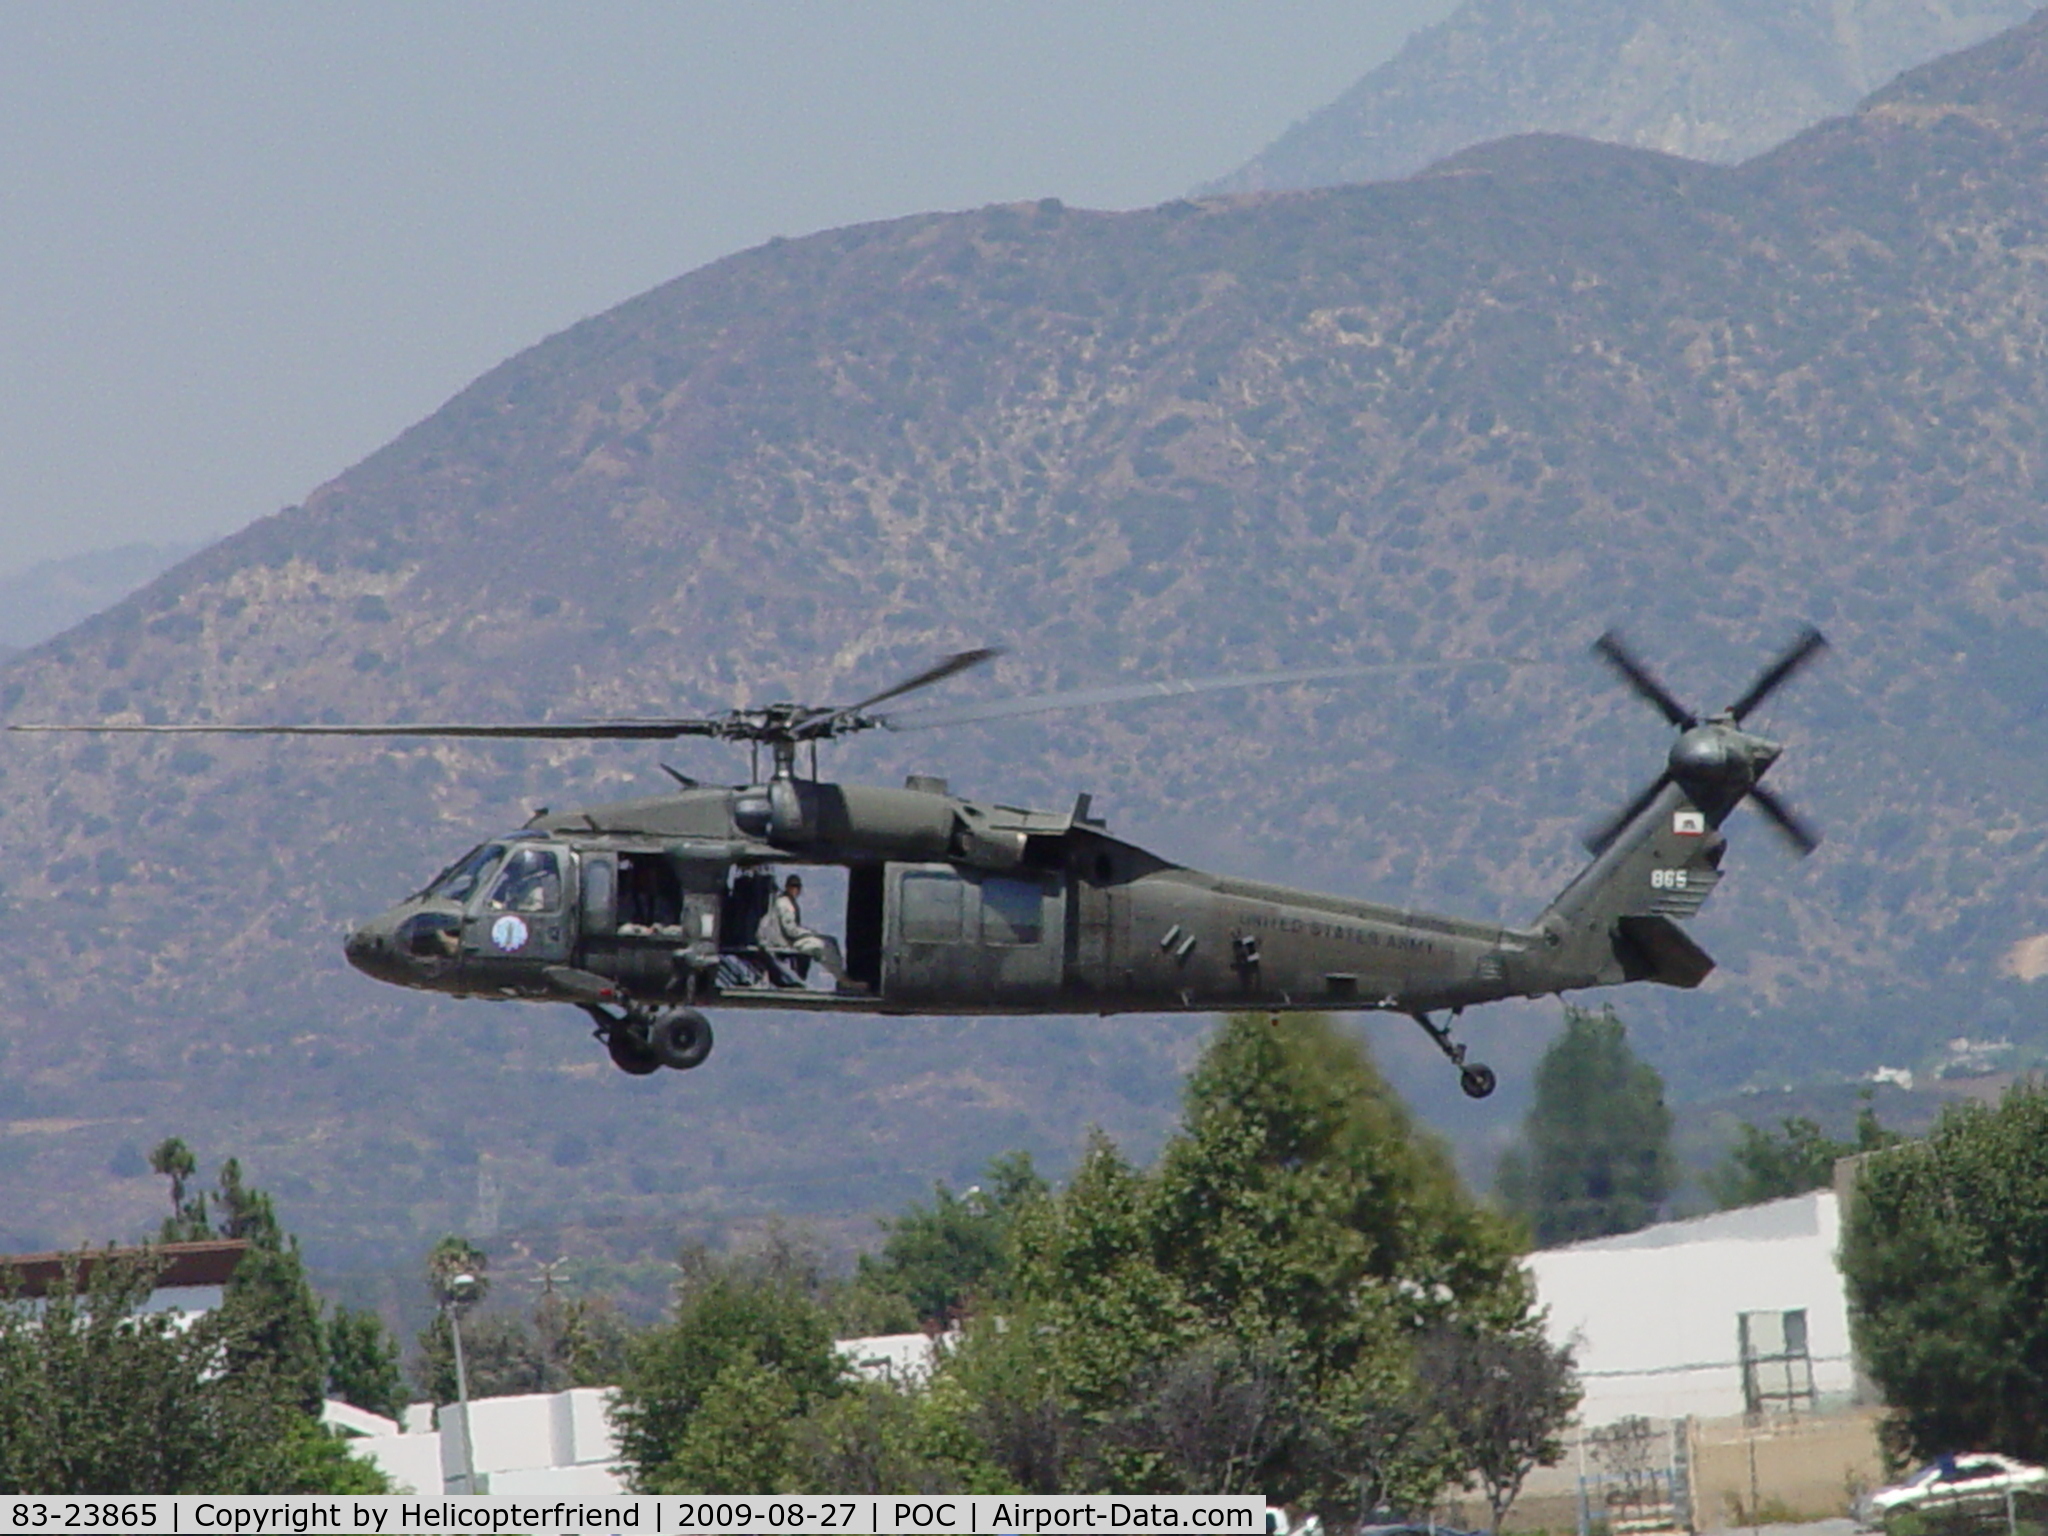 83-23865, 1983 Sikorsky UH-60A Black Hawk C/N 70690, US Army landing 26L